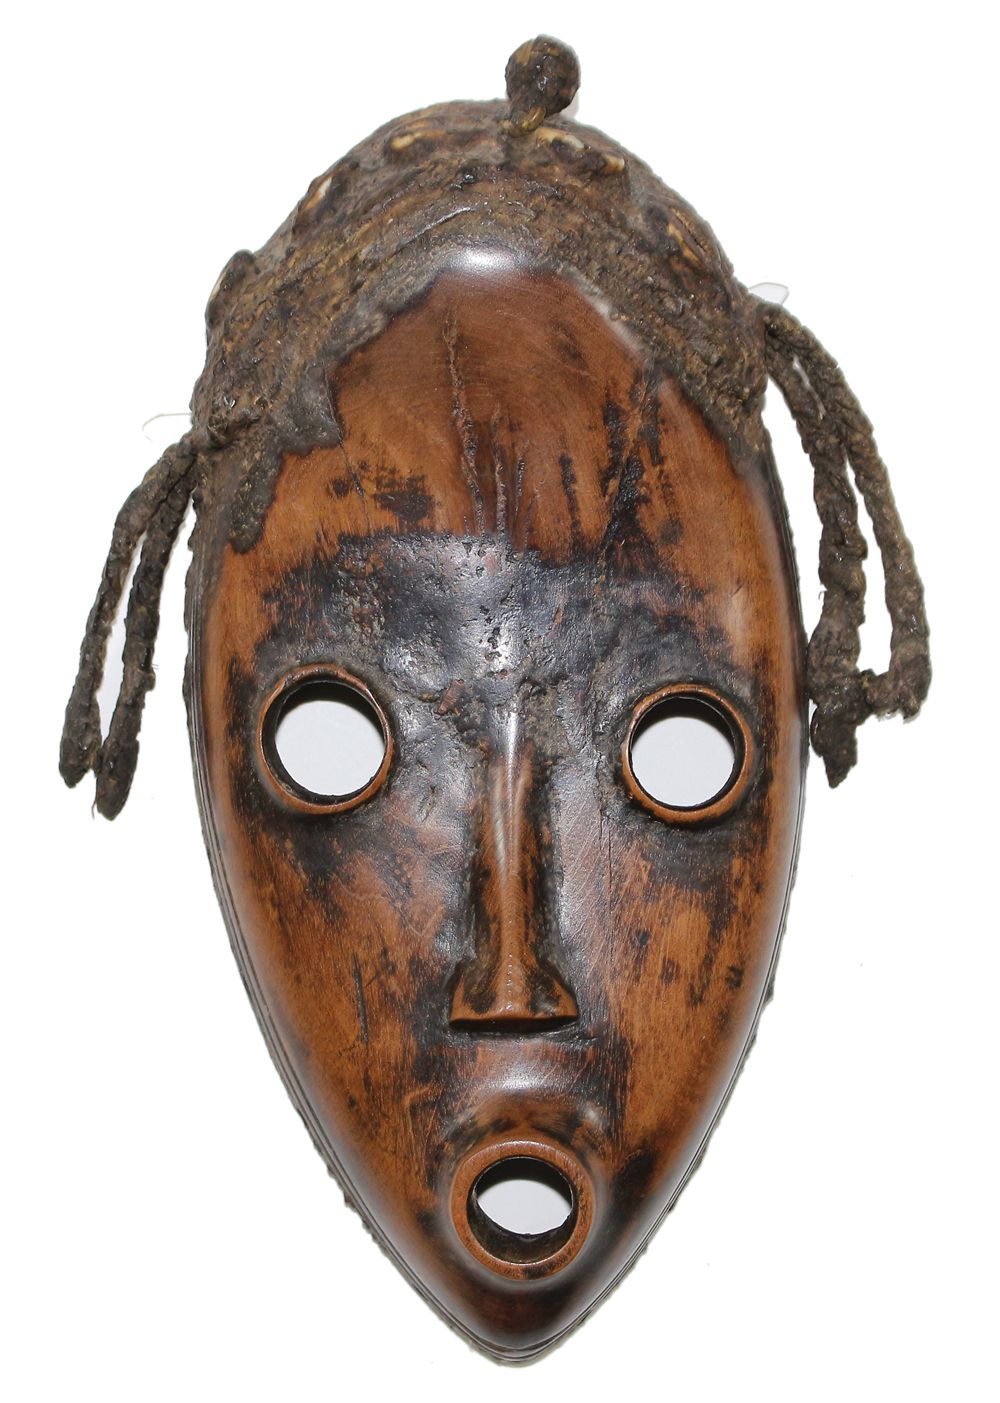 Maske Dan Liberia Máscara ovoide con pátina marrón brillante. Ojos y boca circul&hellip;